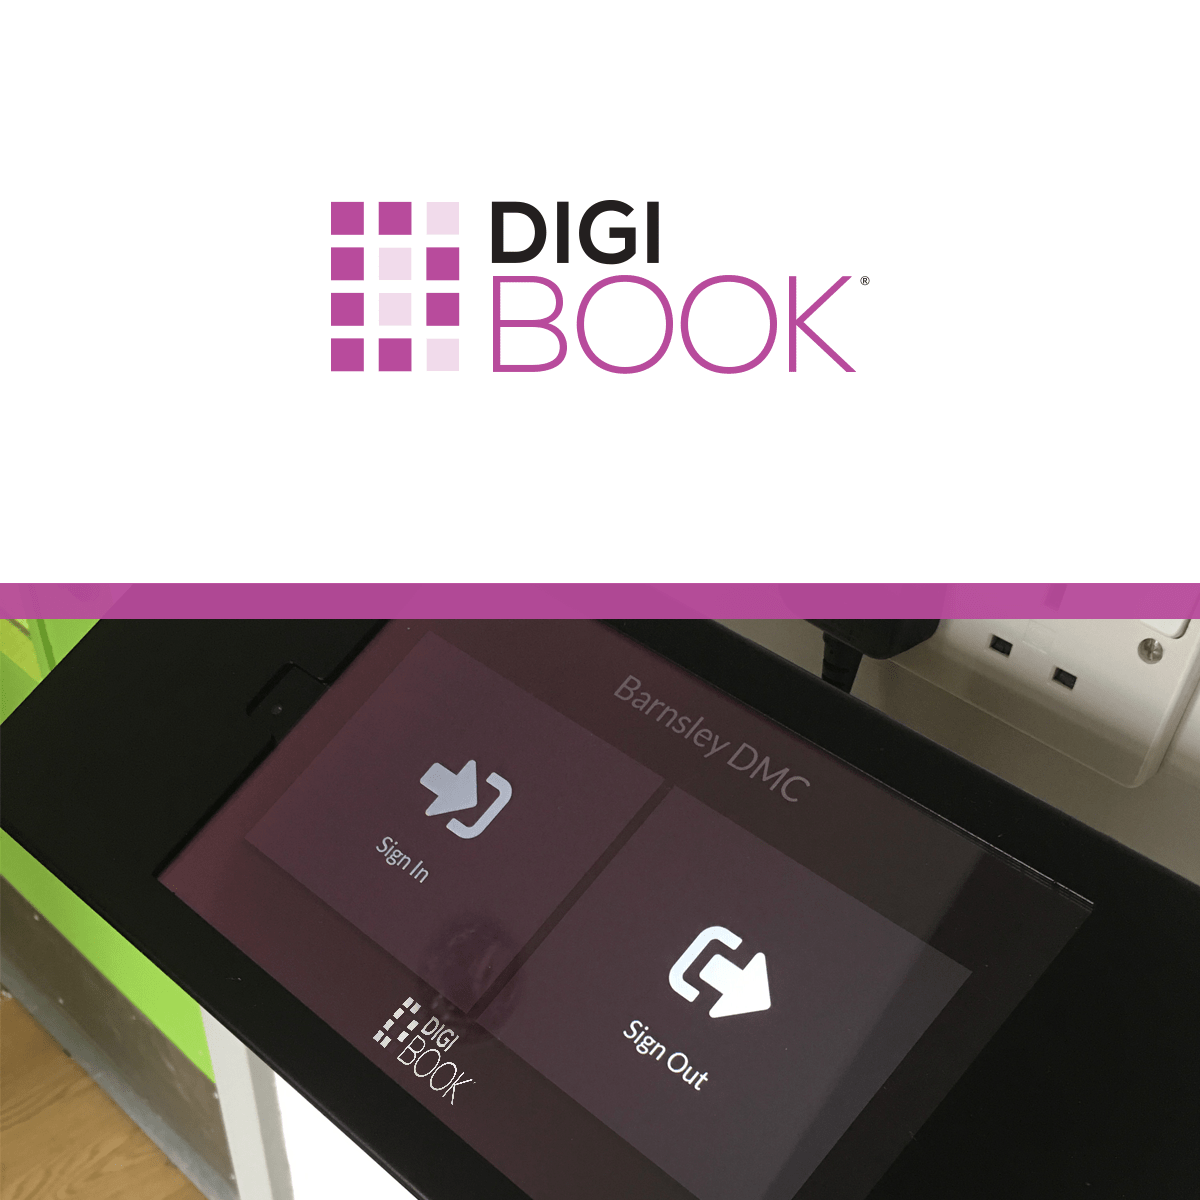 DigiBook branding